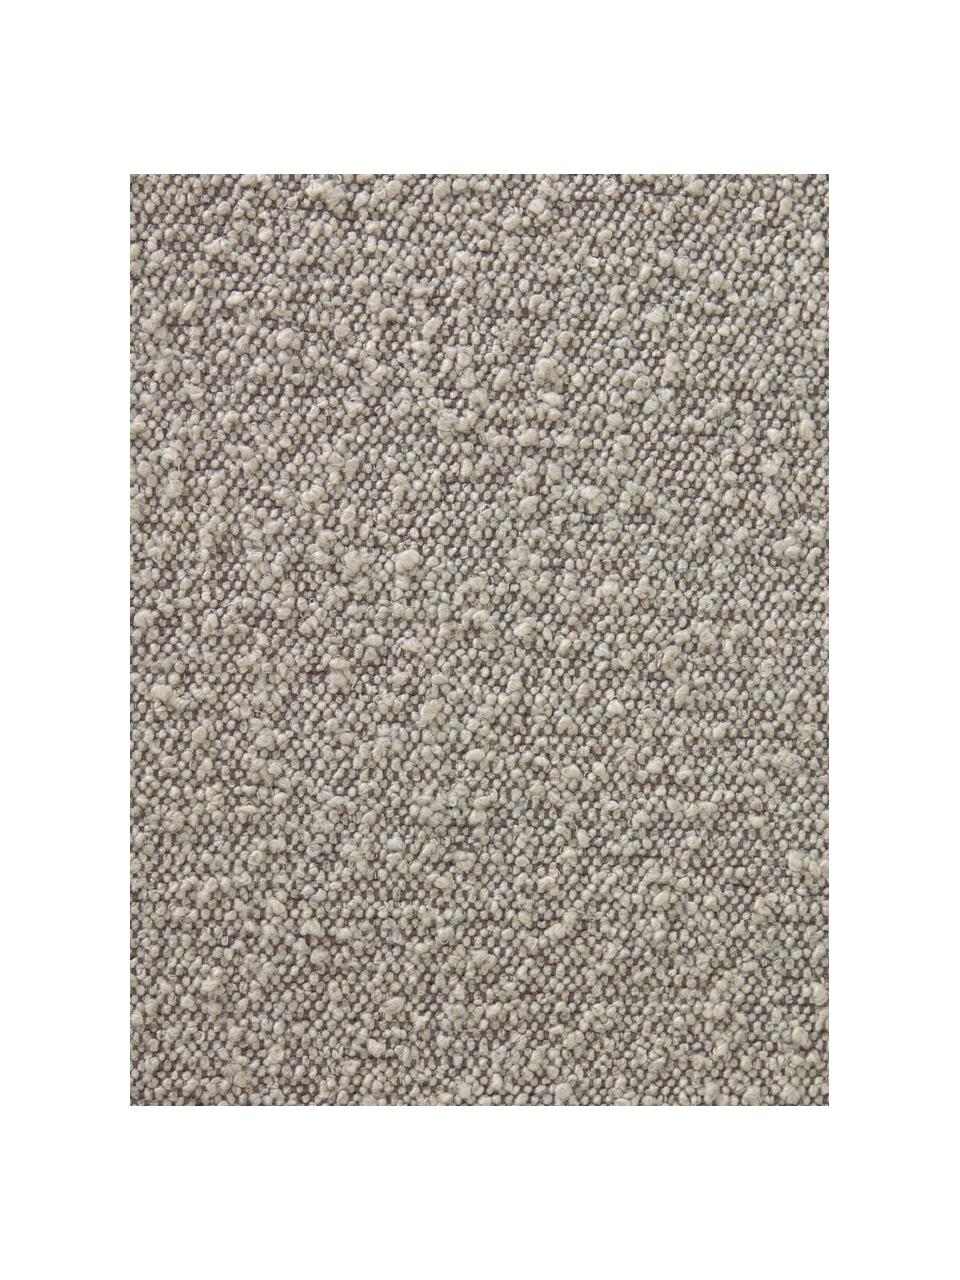 Beukenhouten wieg Adara met schapenvacht in grijs, Frame: massief beukenhout, Bekleding: schapenvacht, Grijs, lichtbruin, 80 x 69 cm